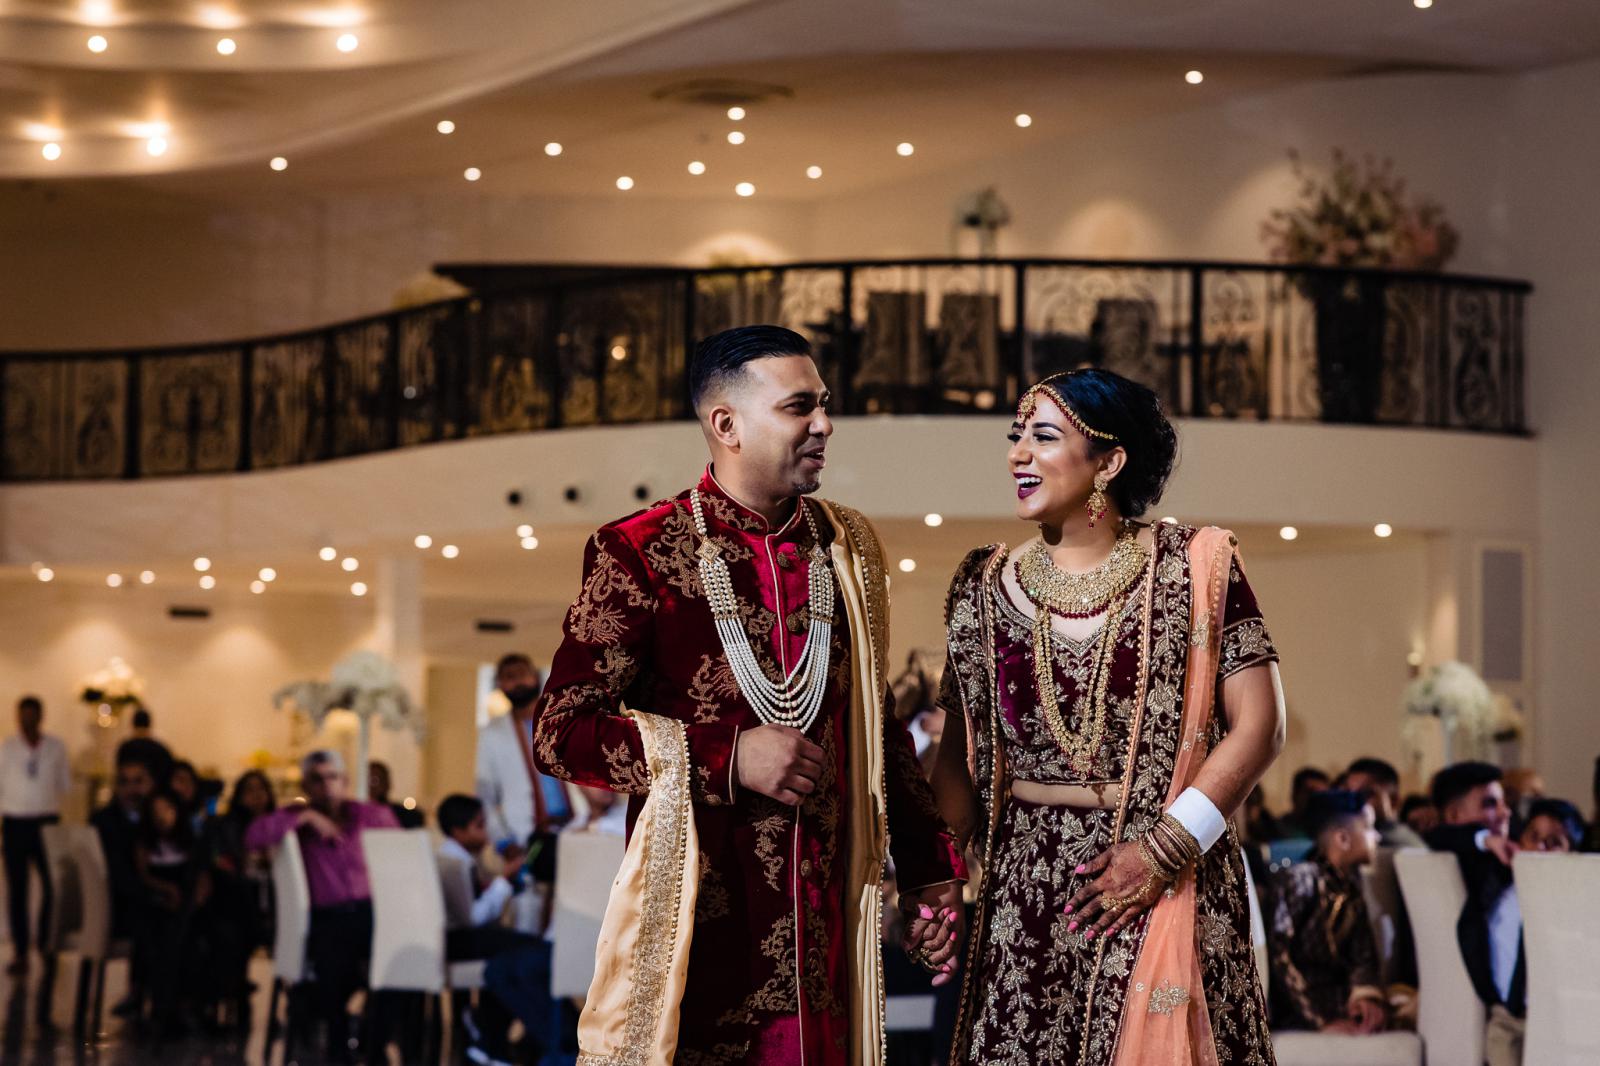 openingsdans hindoestaanse bruiloft door trouwfotograaf rey events almere